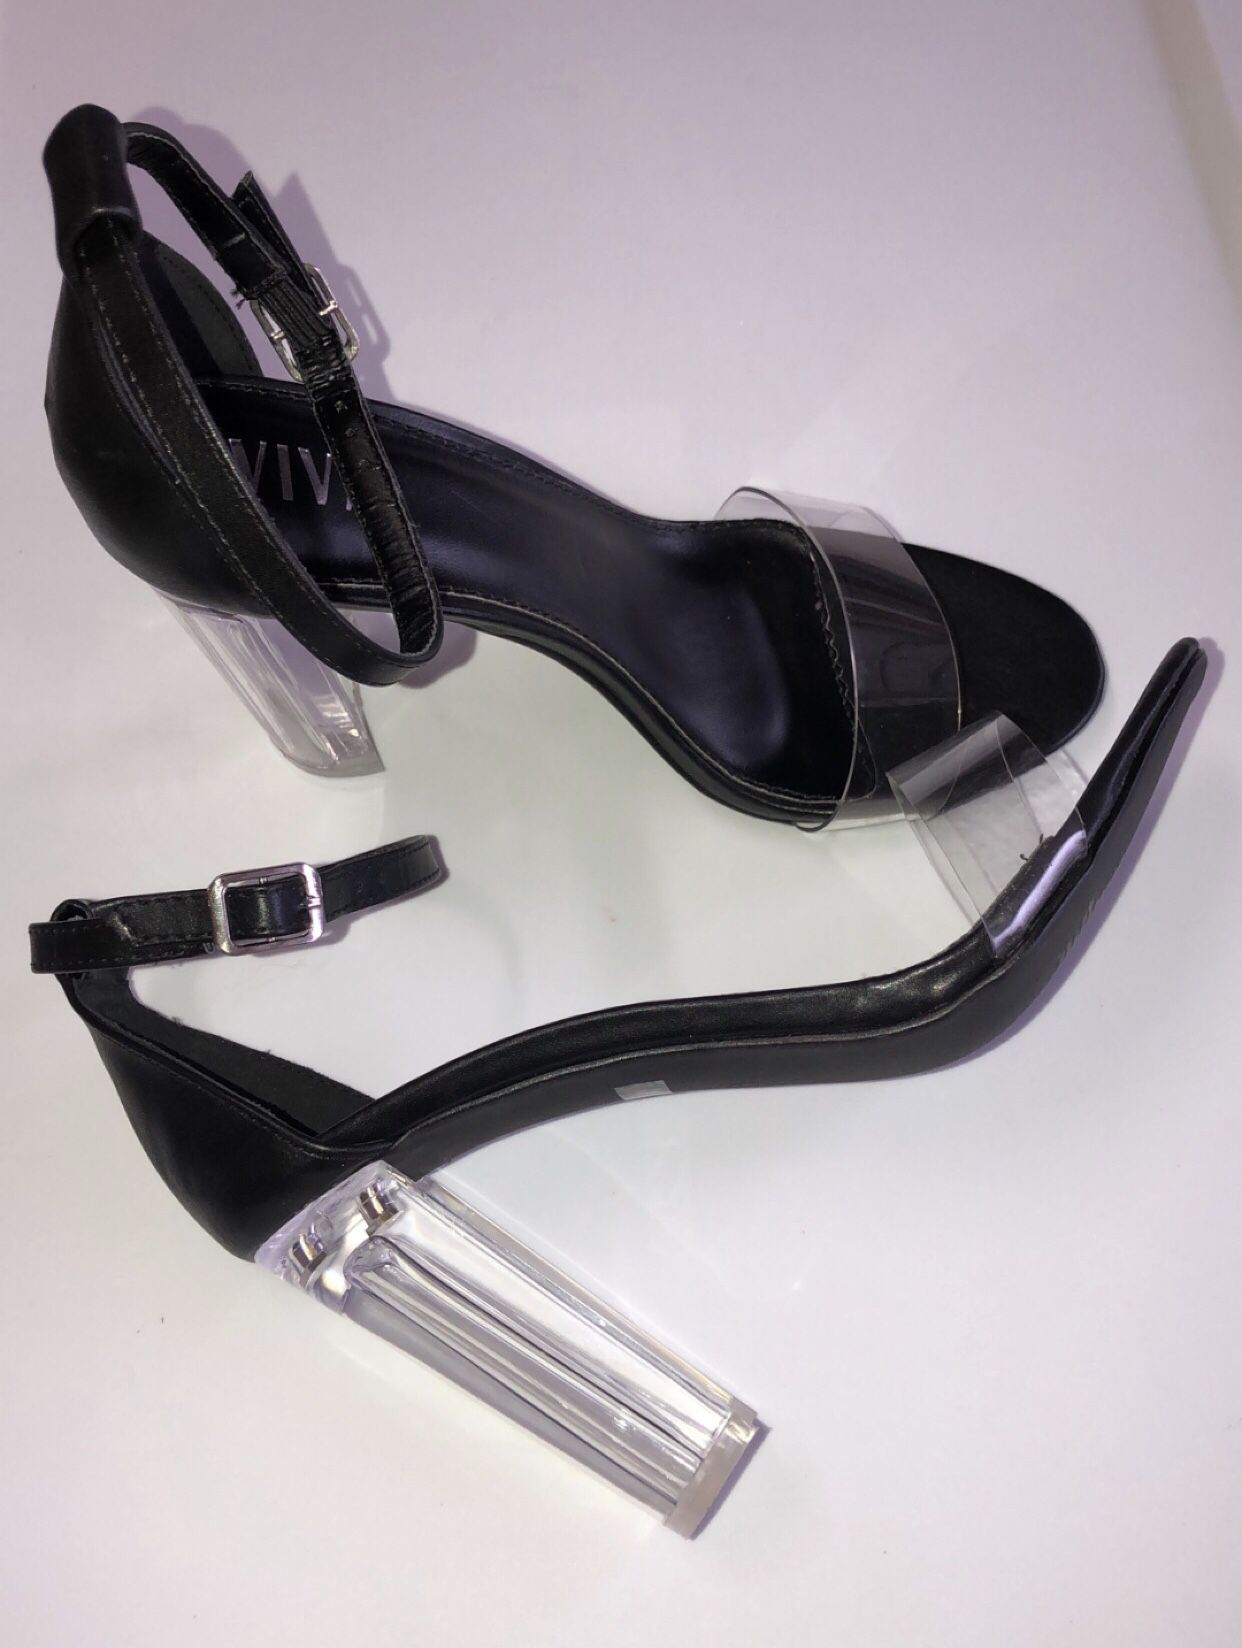 Black & clear heels